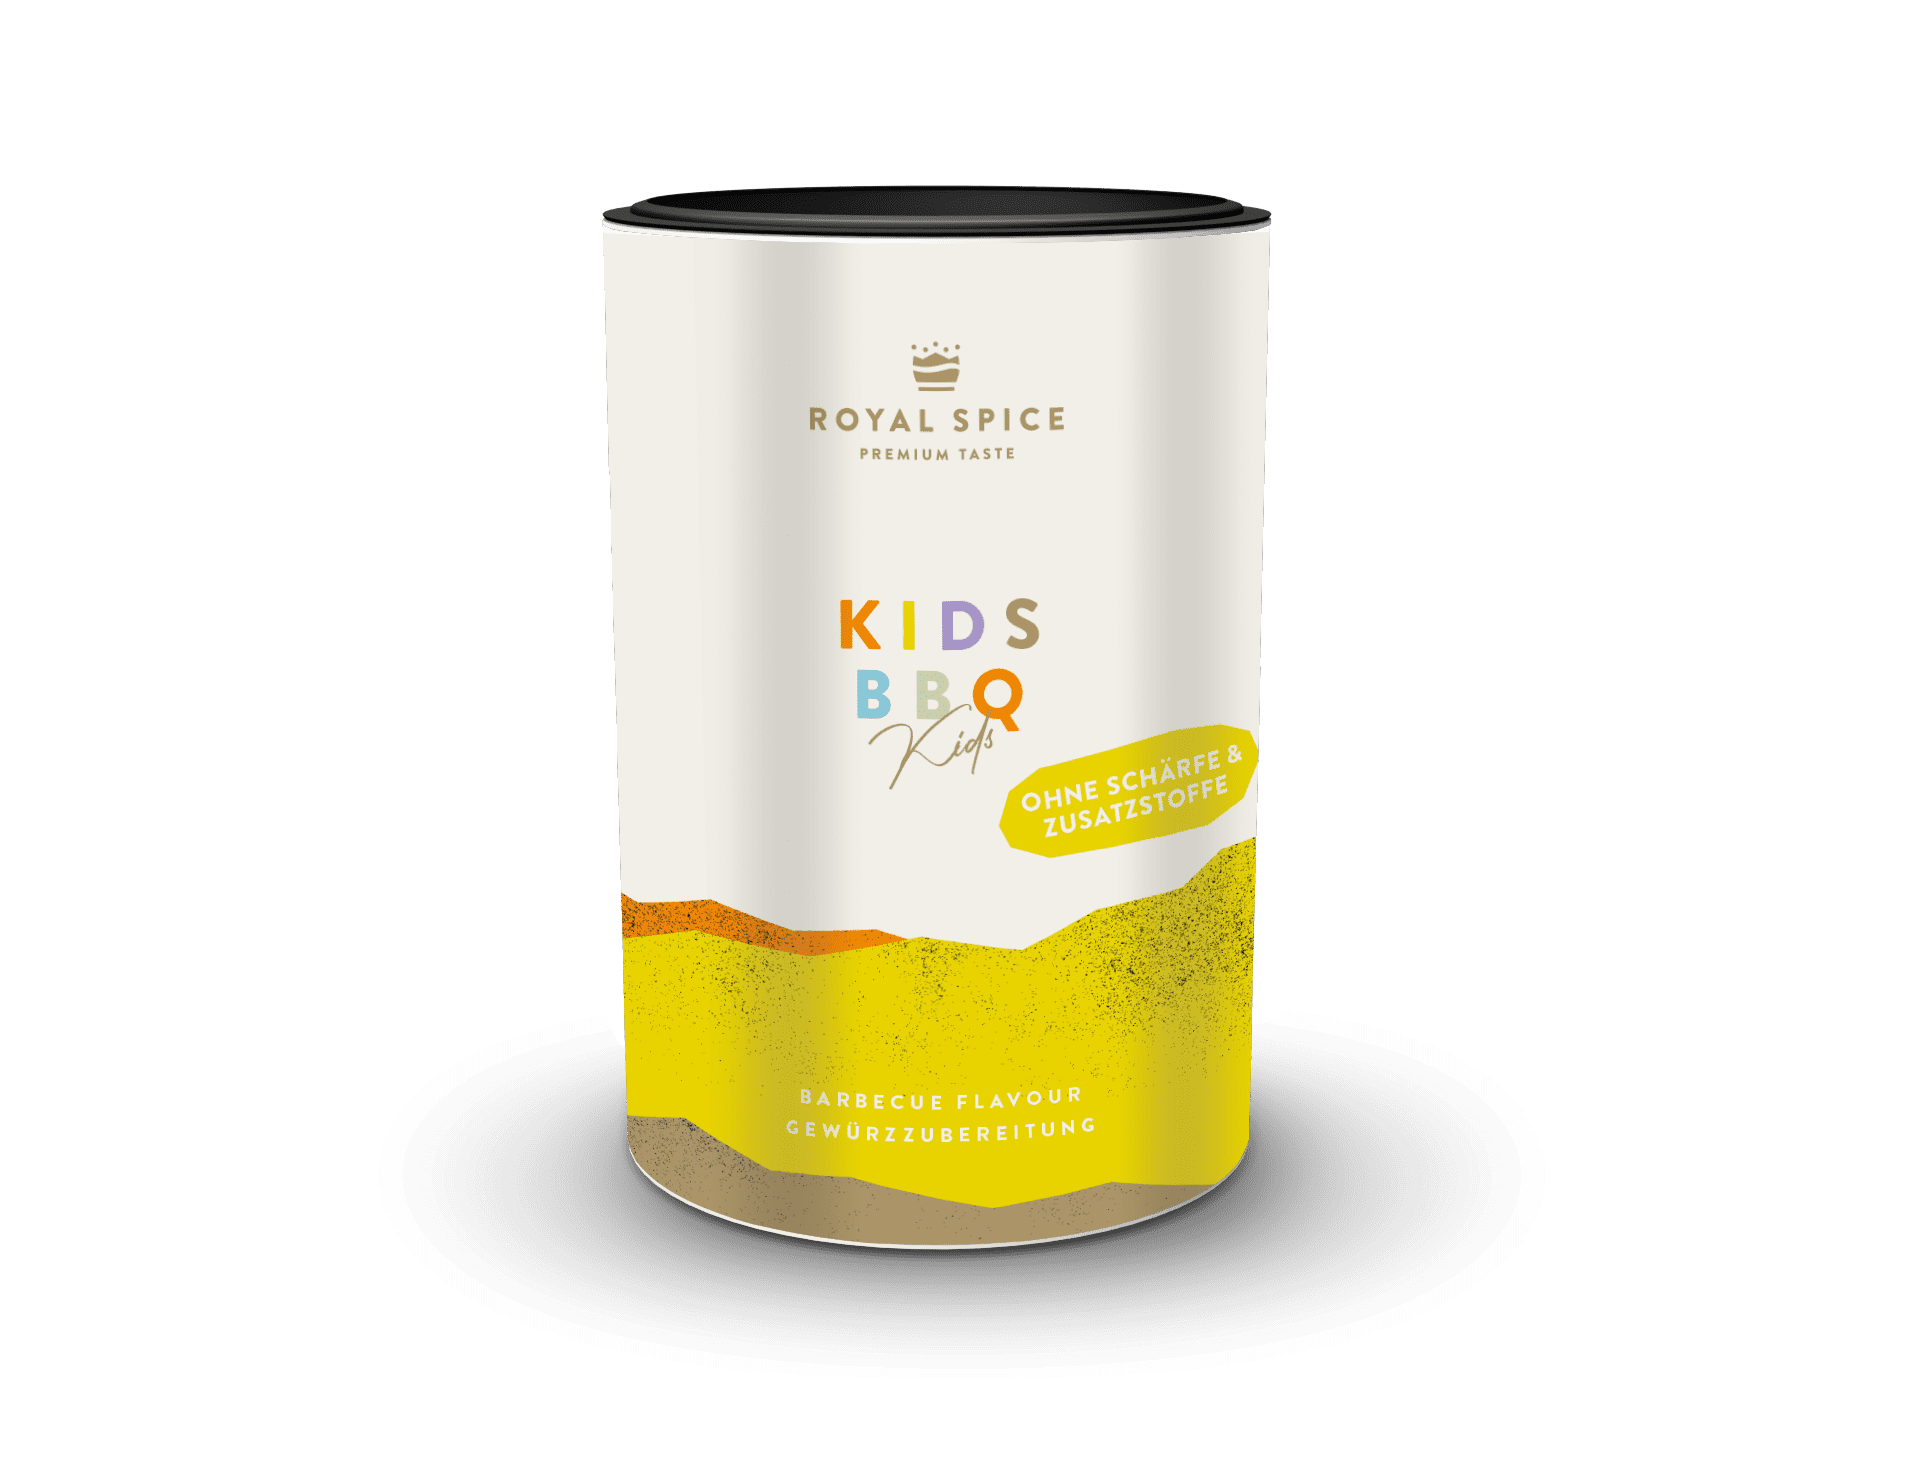 Kids BBQ, Rub ohne Schärfe für Kinder